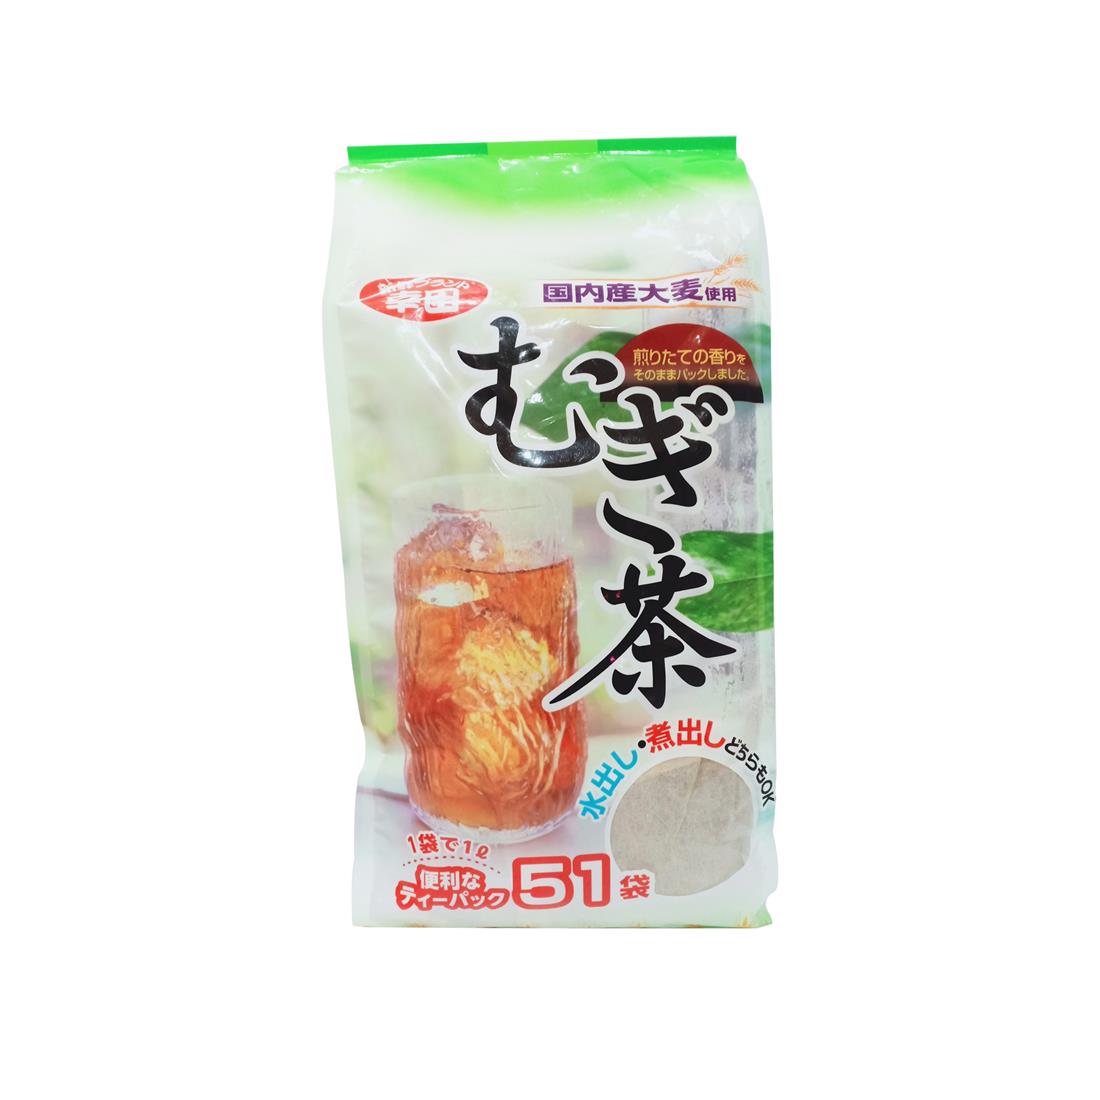 Trà lúa mạch Koda Shoten thanh lọc cơ thể duy trì vóc dáng 510g (10gx51 gói) - Tặng túi zip kẹo mật ong nguyên chất